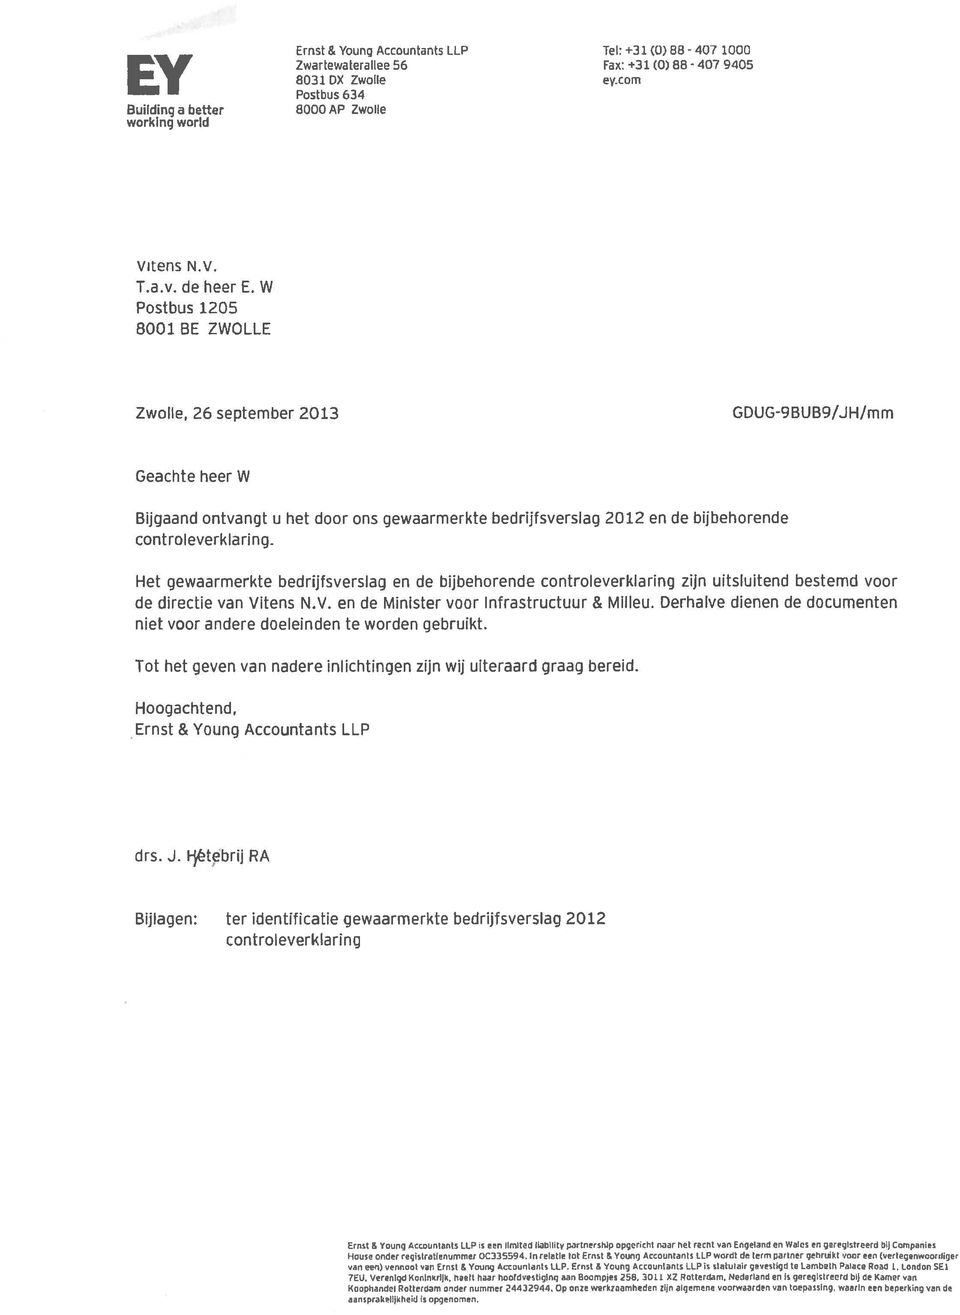 W Postbus 1205 8001 BE ZWOLLE Zwolle, 26 september 2013 GDUG-9BUB9/JH/mm Geachte heer W Bijgaand ontvangt u het door ons gewaarmerkte bedrijfsverslag 2012 en de bijbehorende con t rol everk 1 a ring.